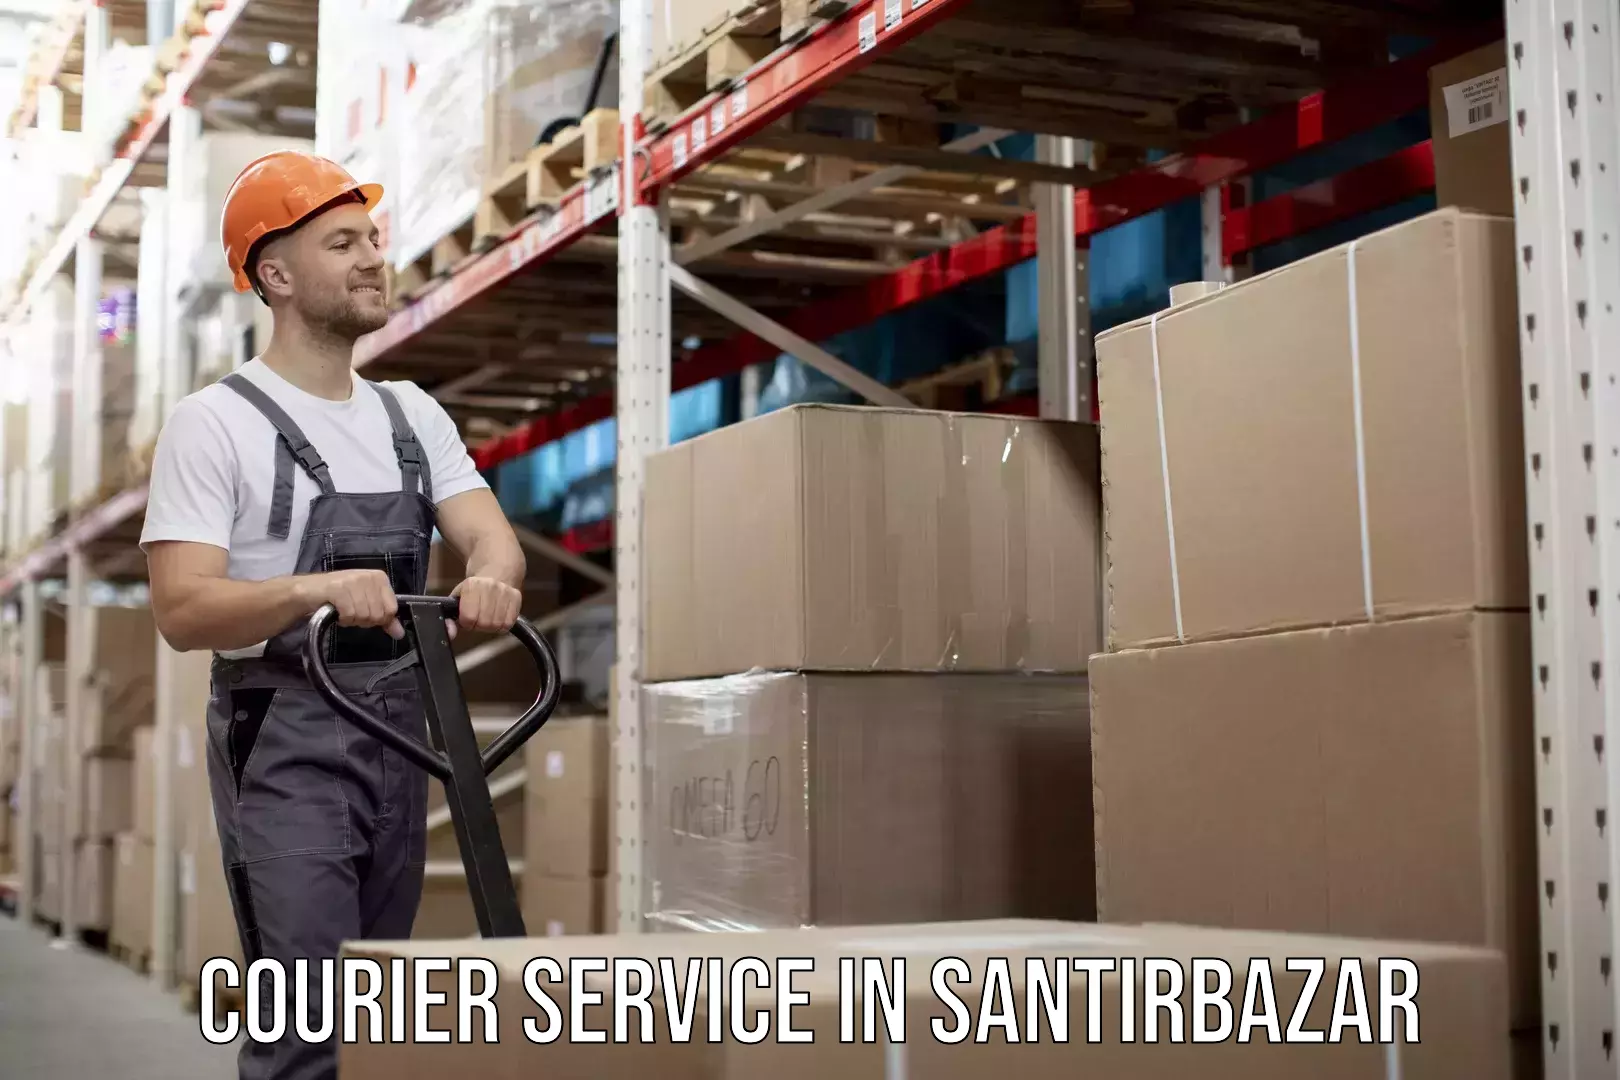 Innovative shipping solutions in Santirbazar